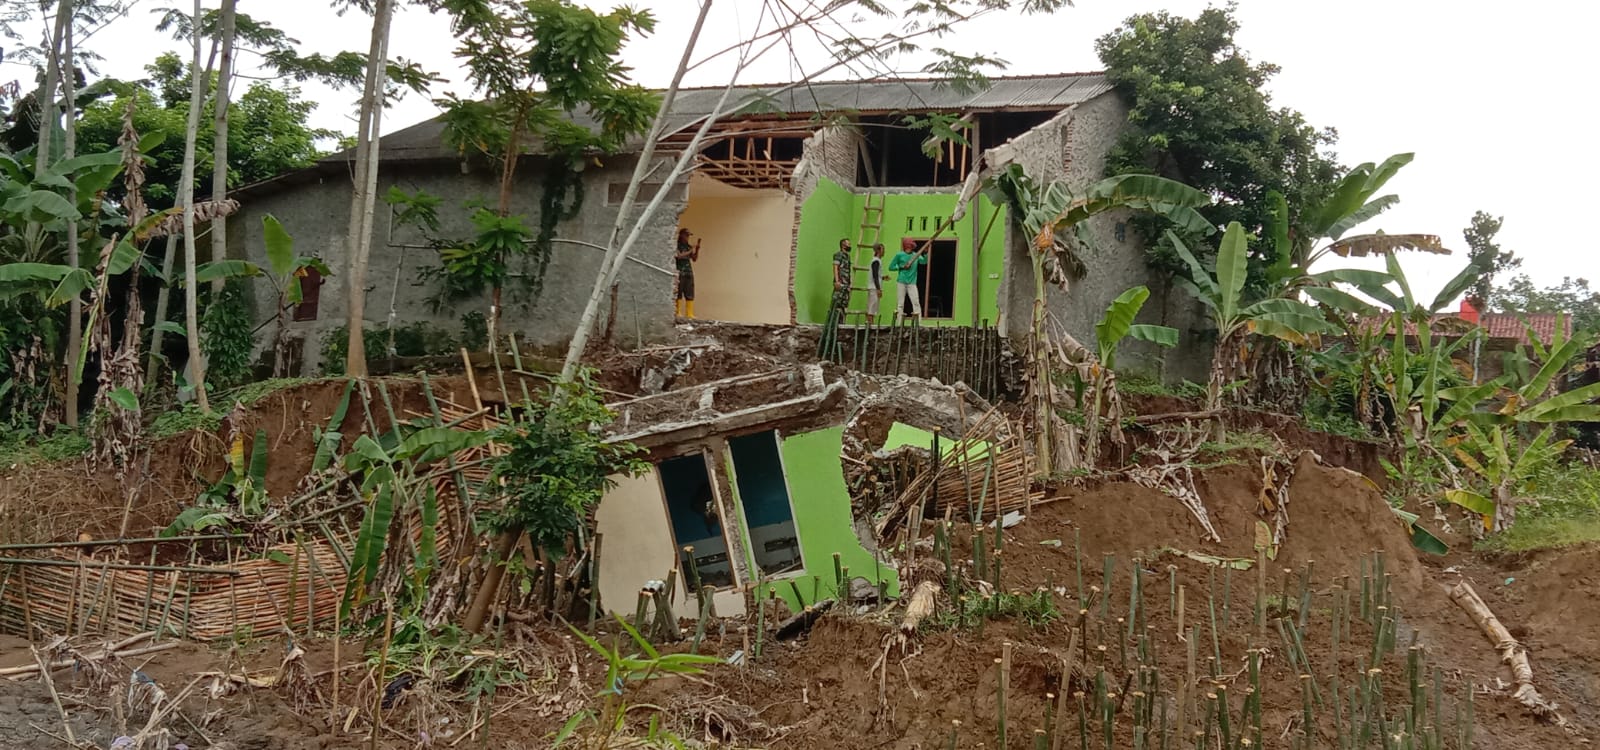 1 Rumah Hanyut dan 8 Rumah Rusak Berat Dampak Erosi Sungai Dare di Rawalo, Penanganan Sedang Dikoordinasikan